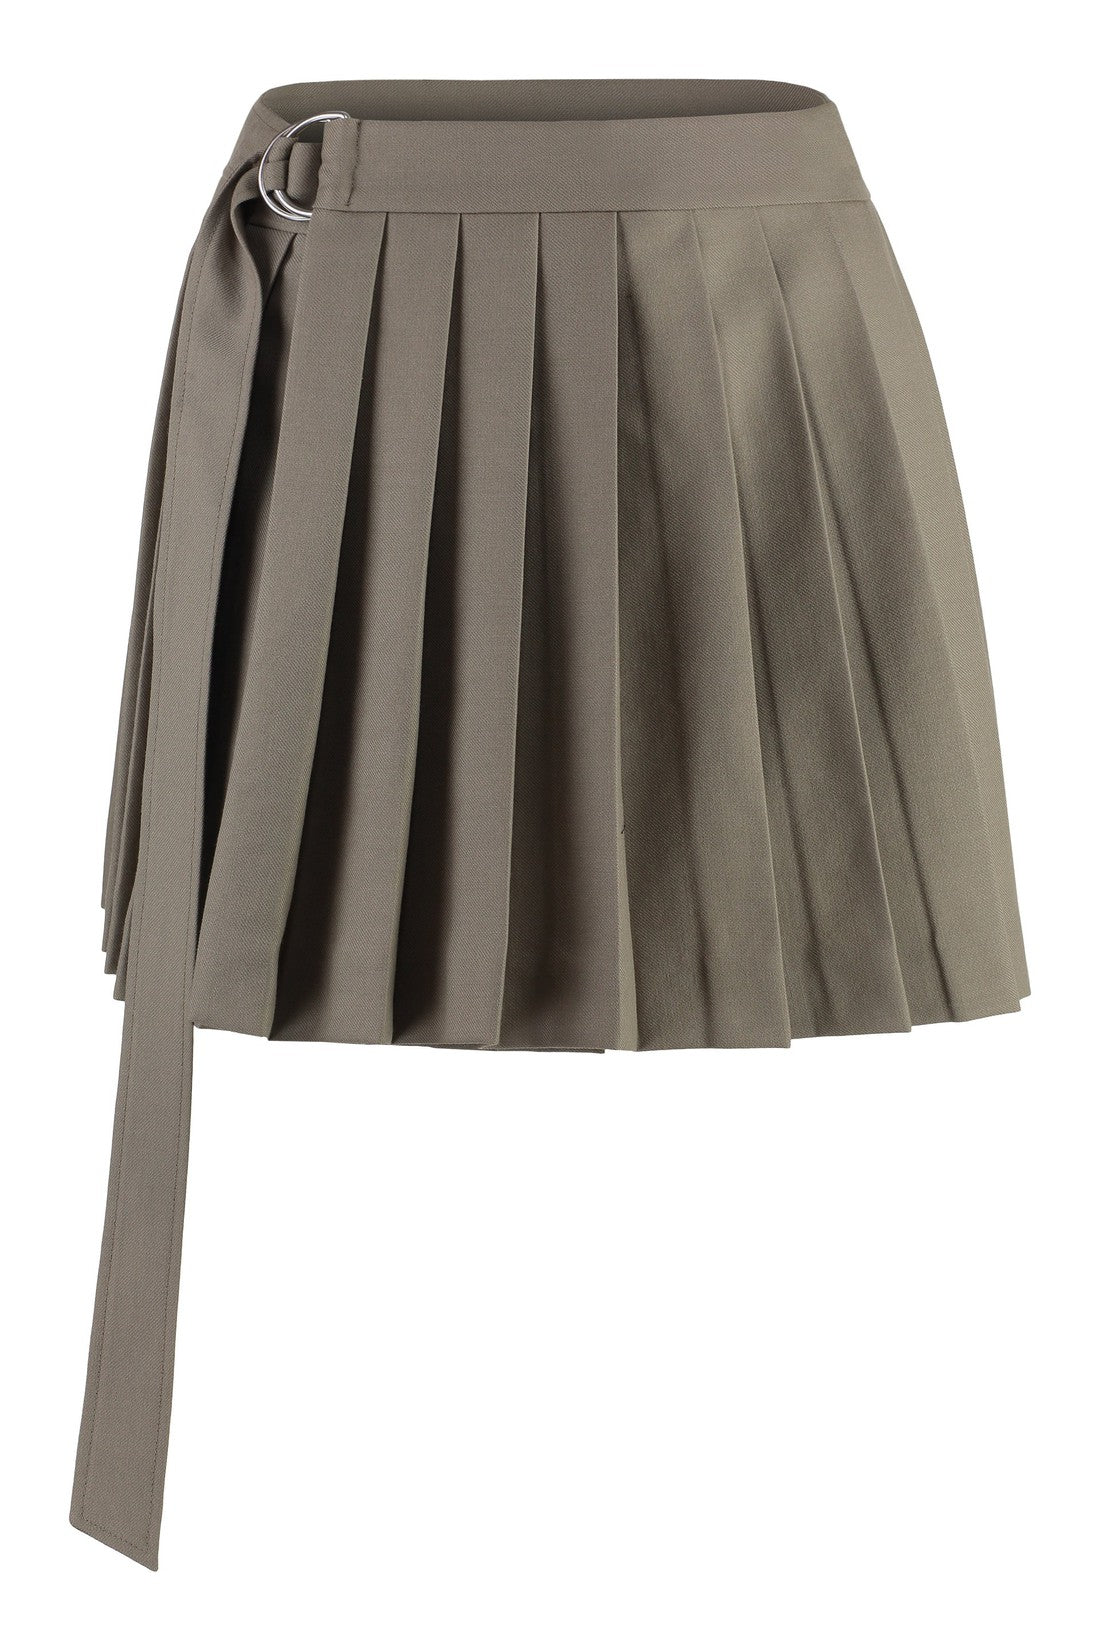 AMI PARIS-OUTLET-SALE-Pleated skirt-ARCHIVIST